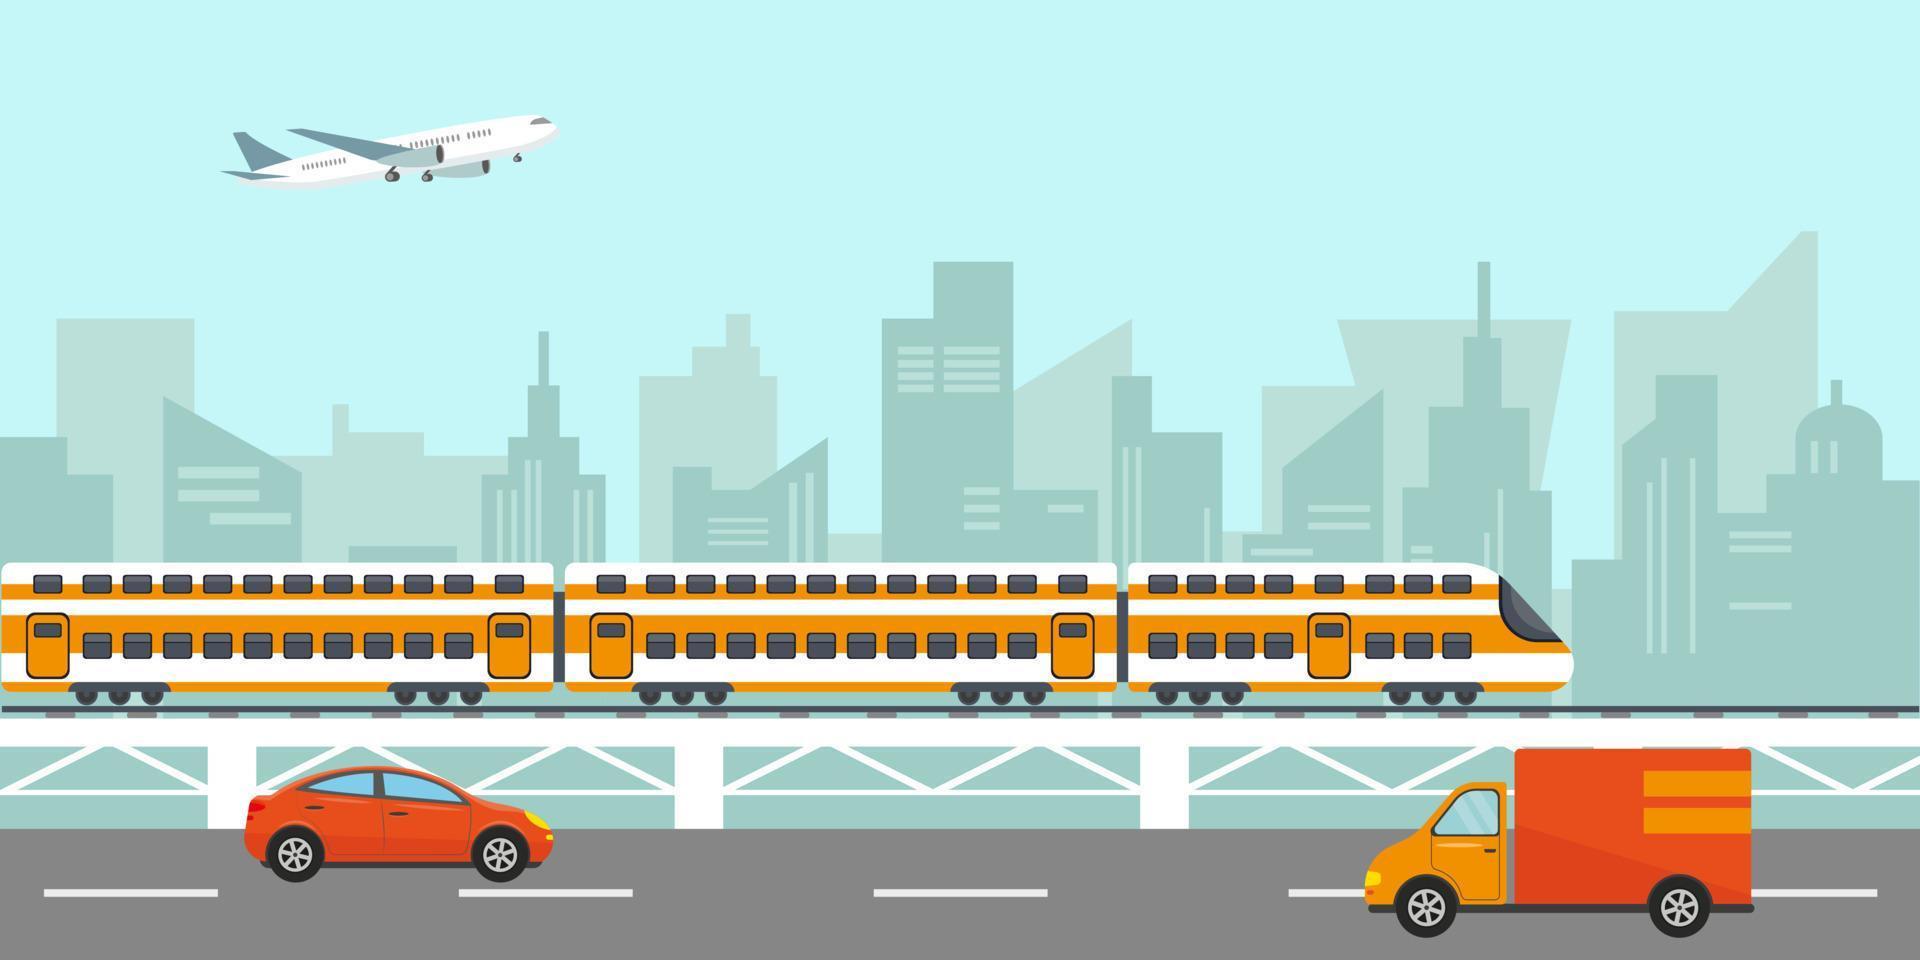 paisagem urbana da cidade com edifícios, trem de alta velocidade de passageiros na ponte, carros na estrada e avião no céu. ilustração vetorial. vetor